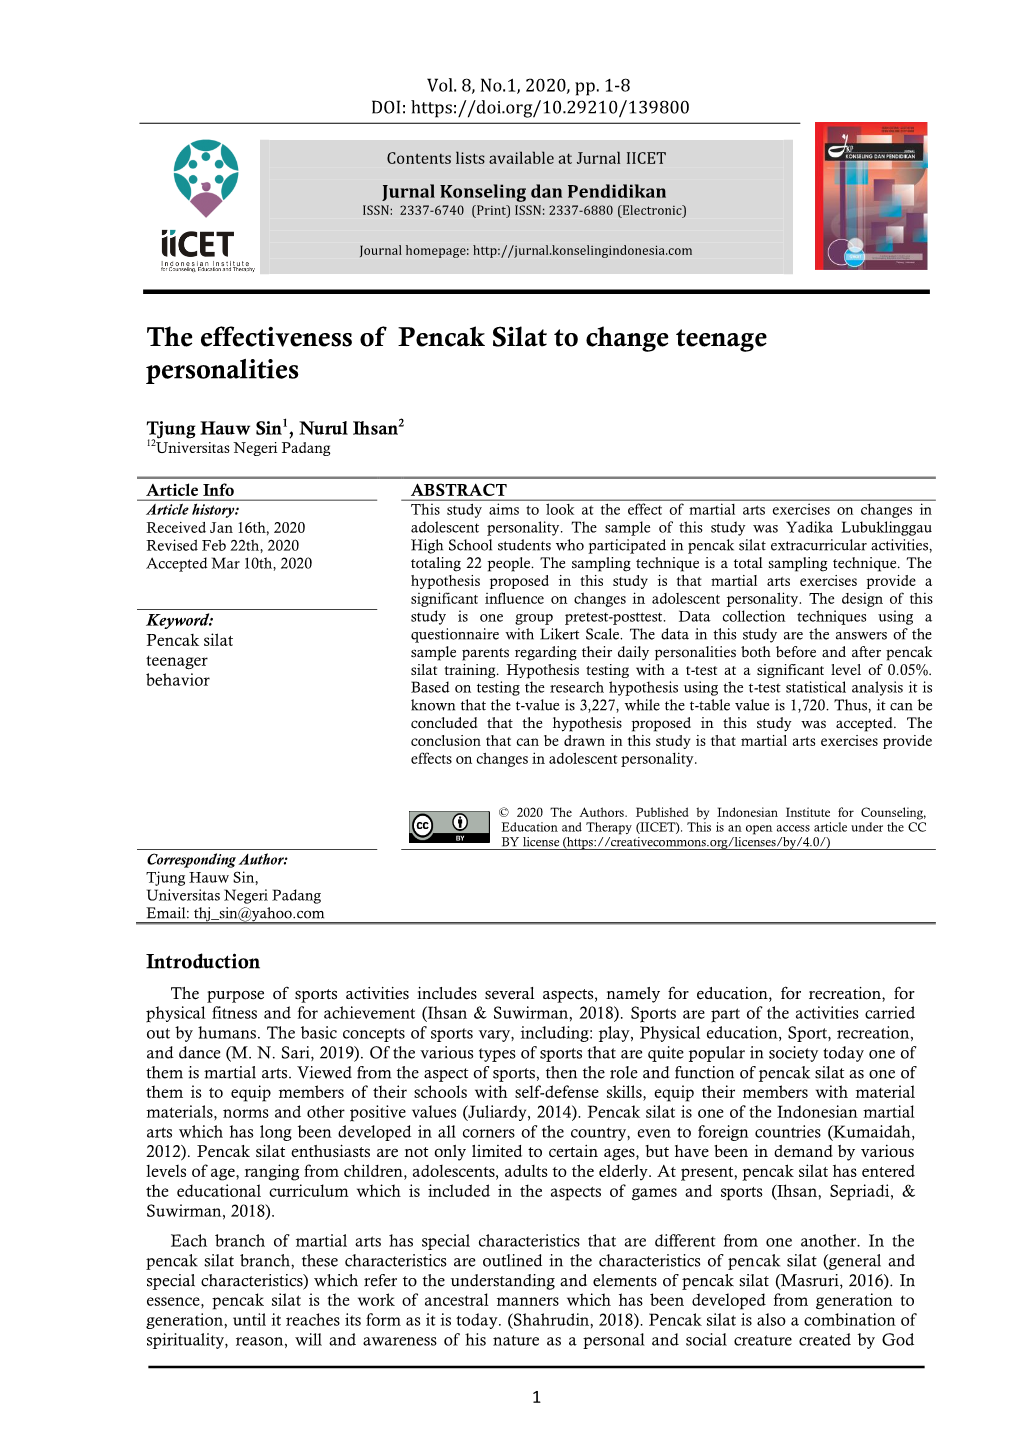 The Effectiveness of Pencak Silat to Change Teenage Personalities